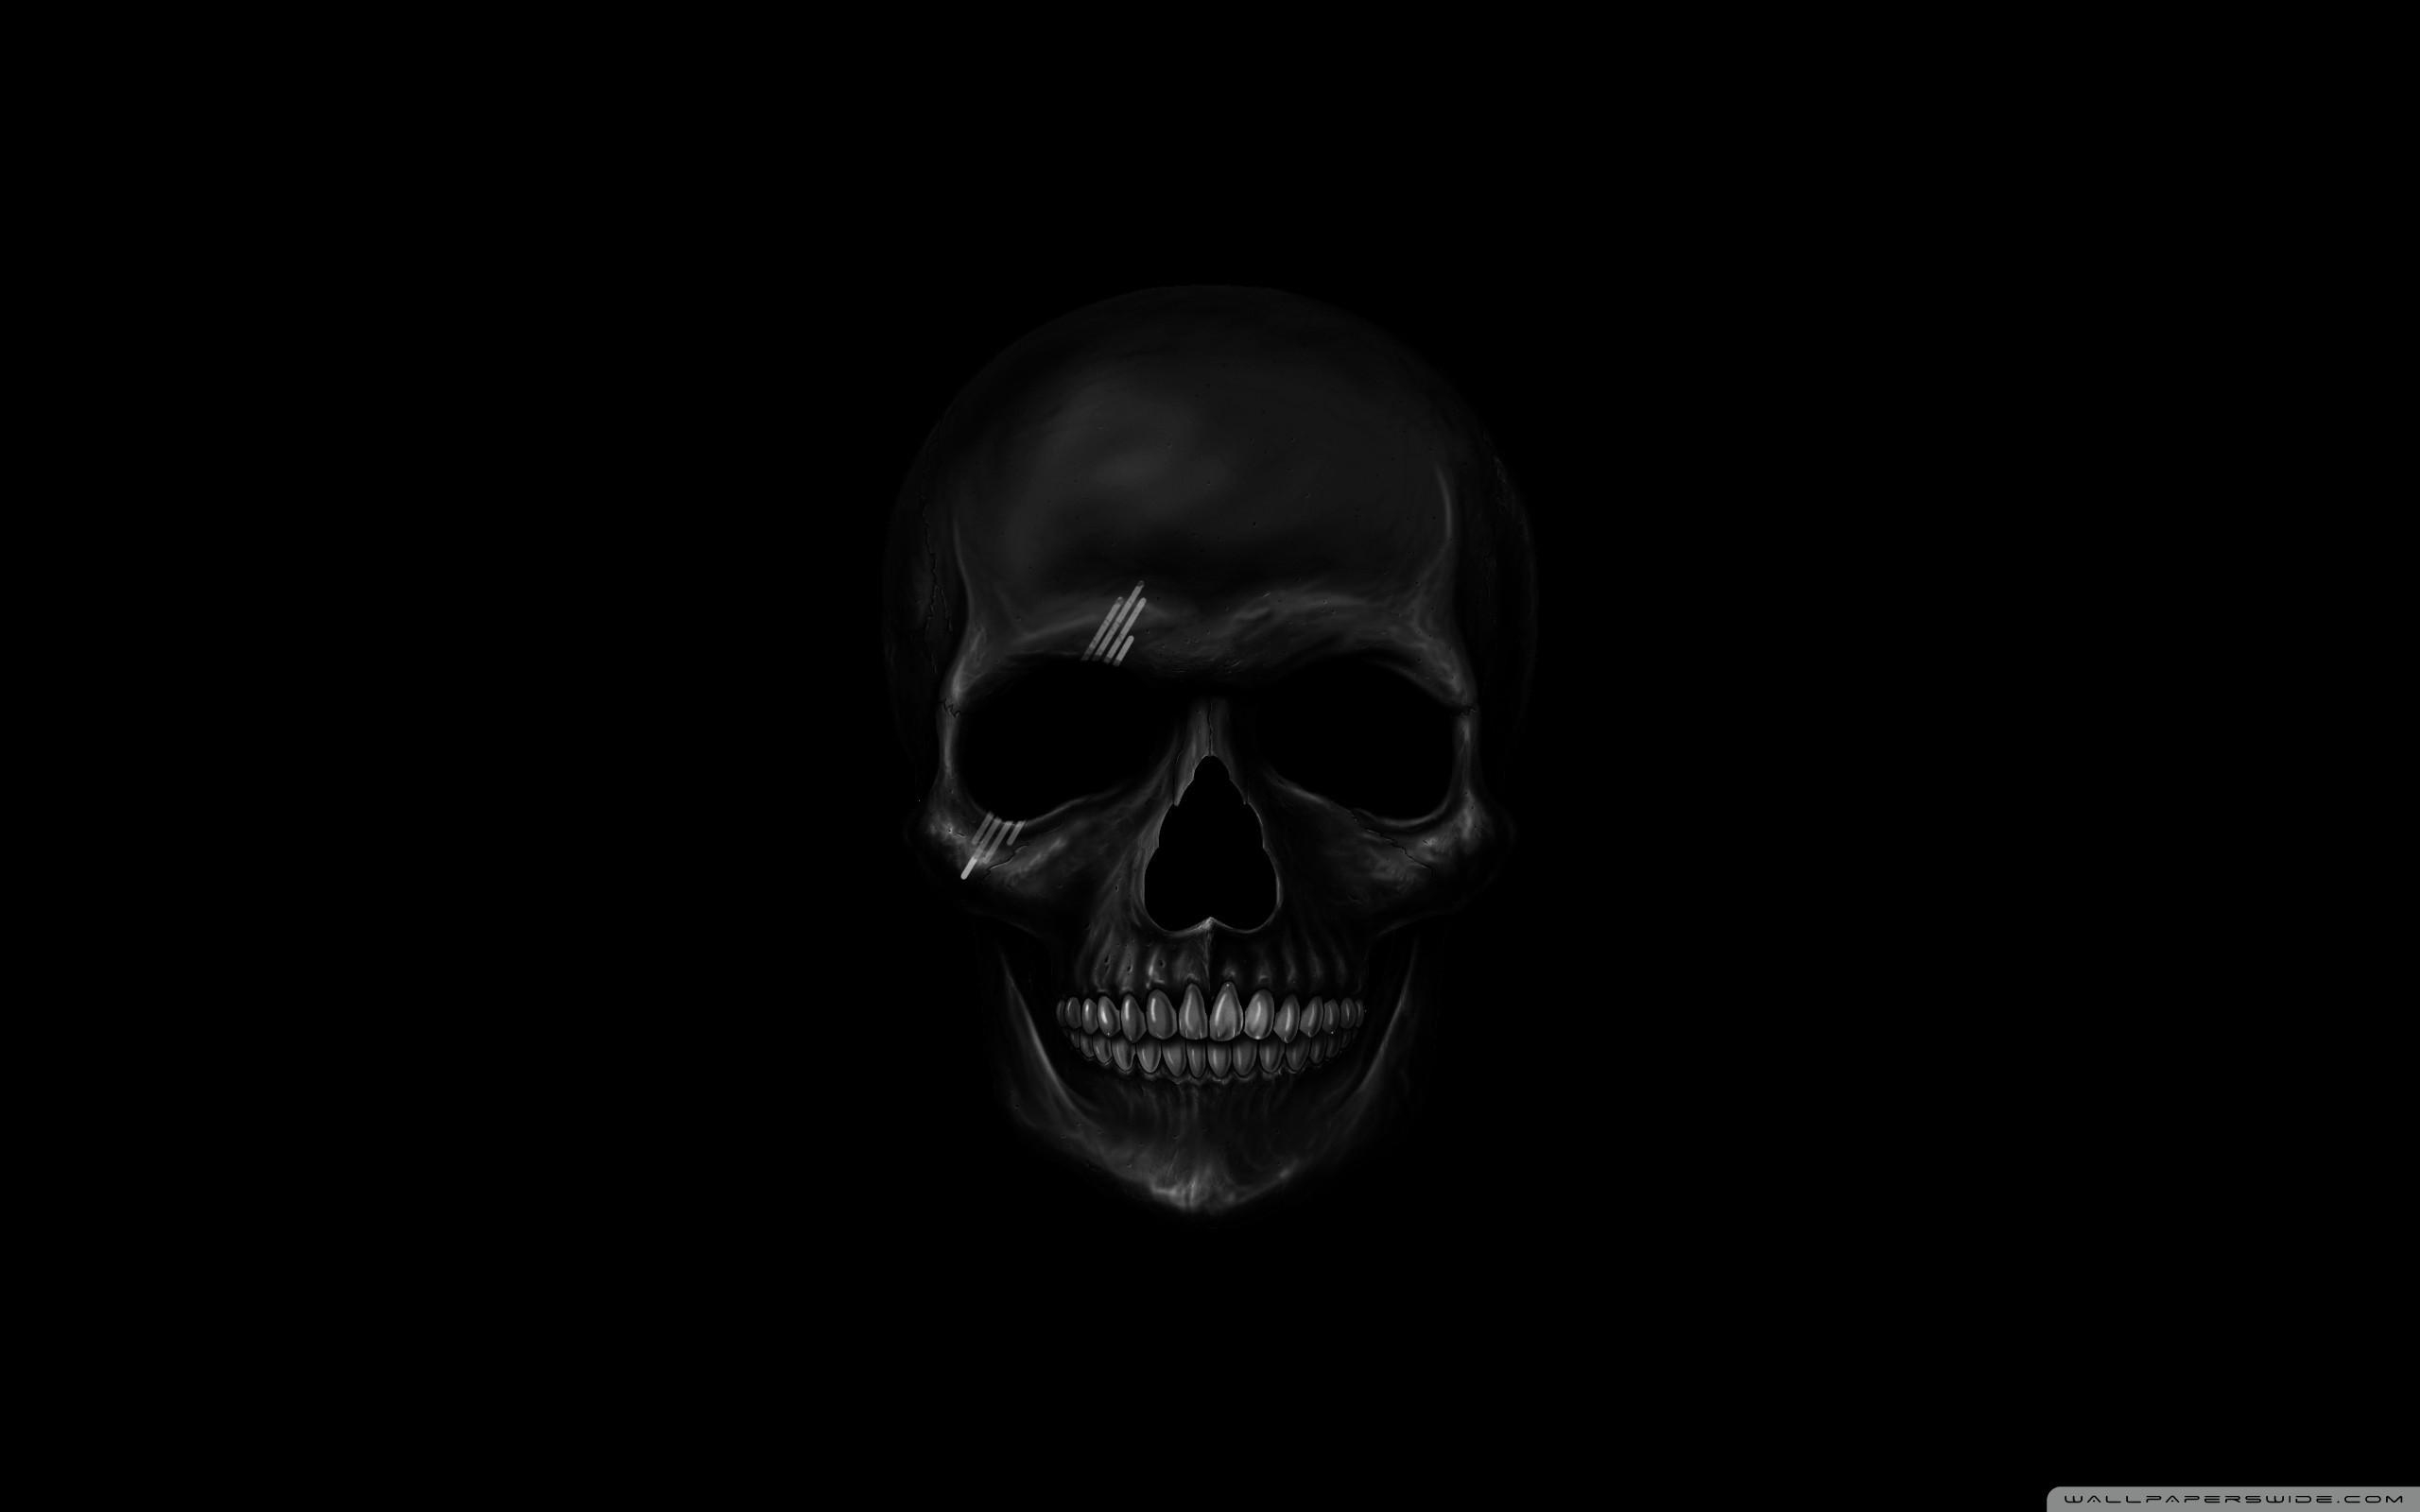 3D Skull Wallpaper